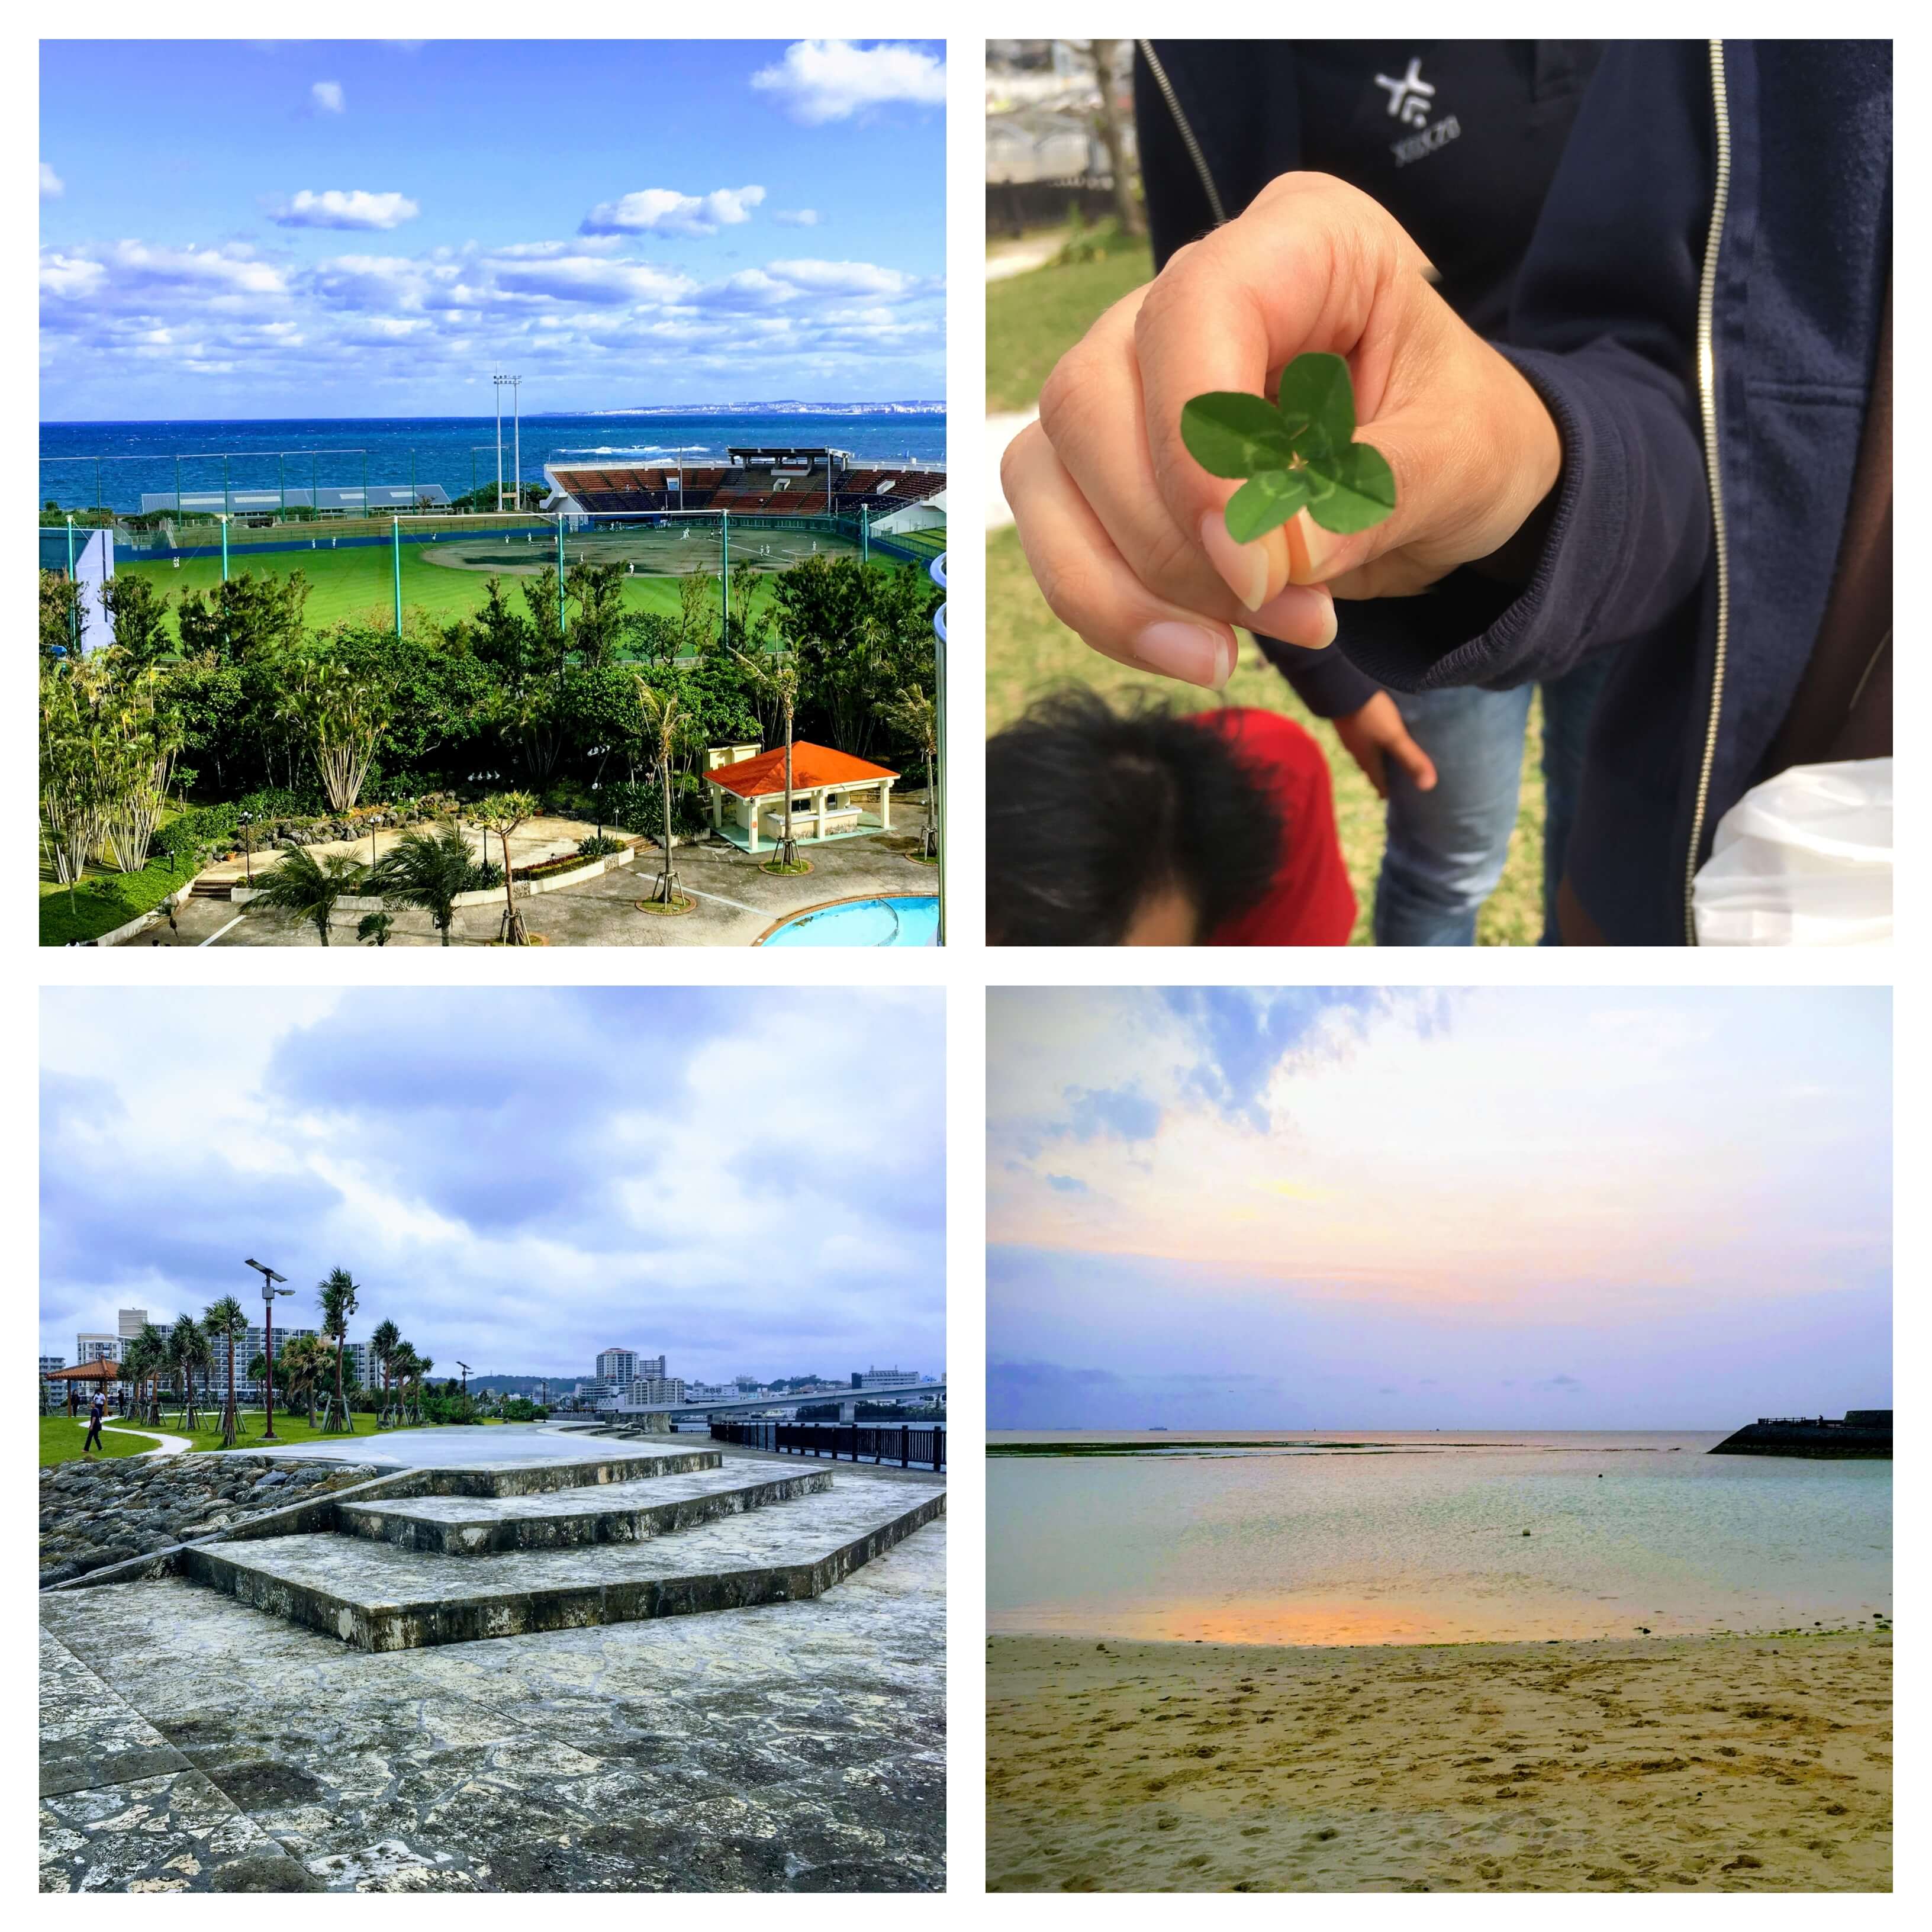 Views of Okinawa